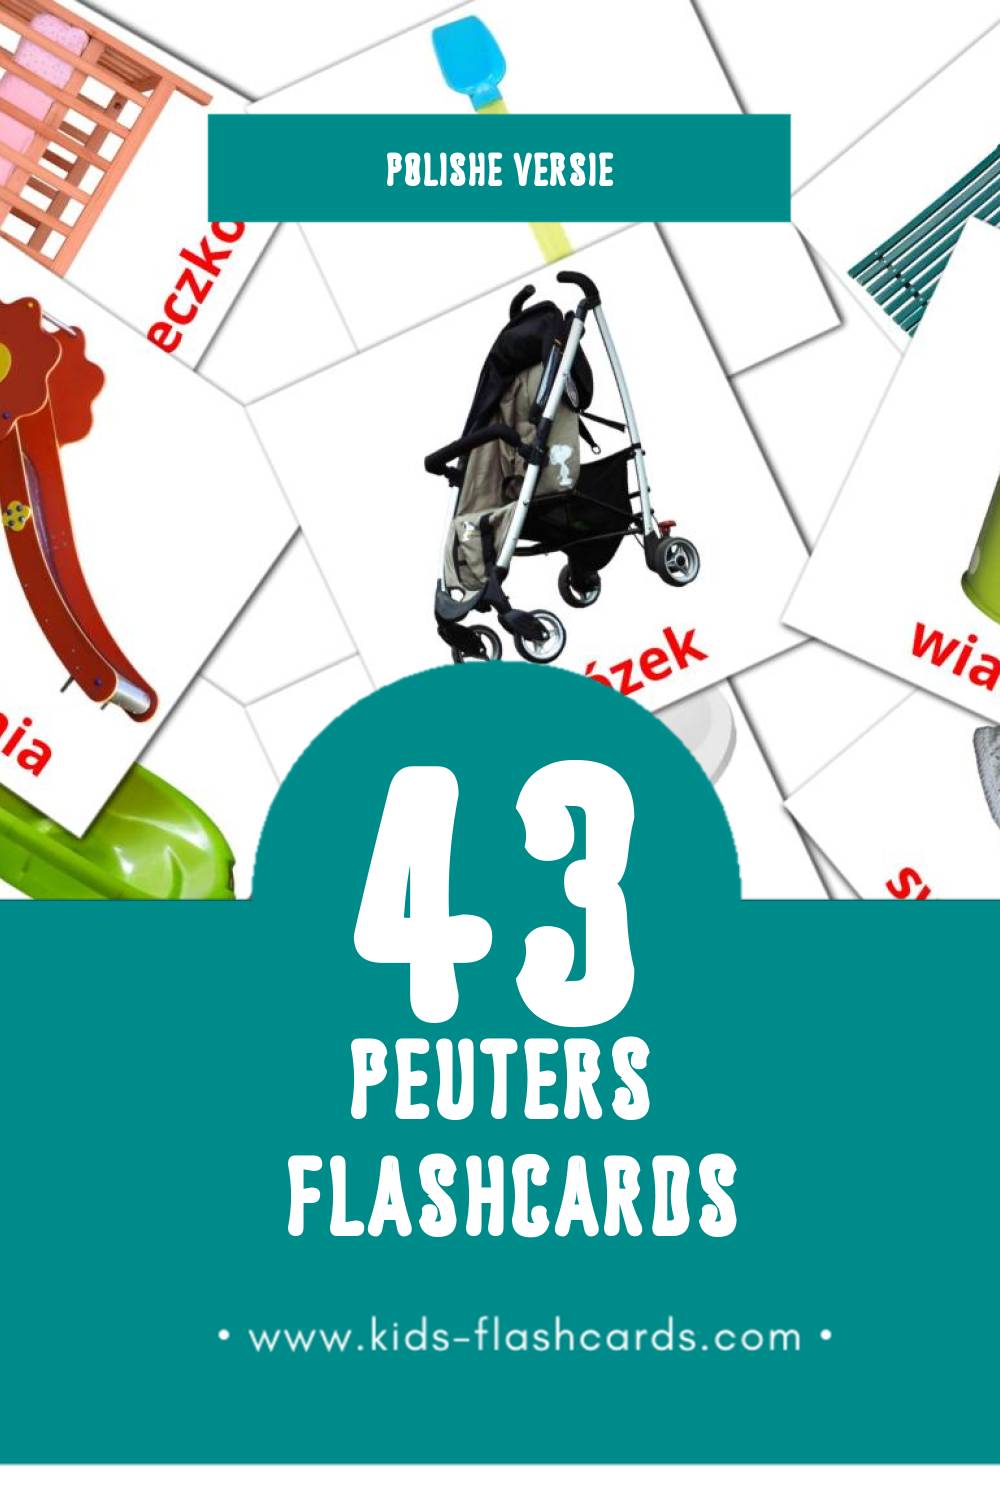 Visuele Dziecko Flashcards voor Kleuters (43 kaarten in het Polish)